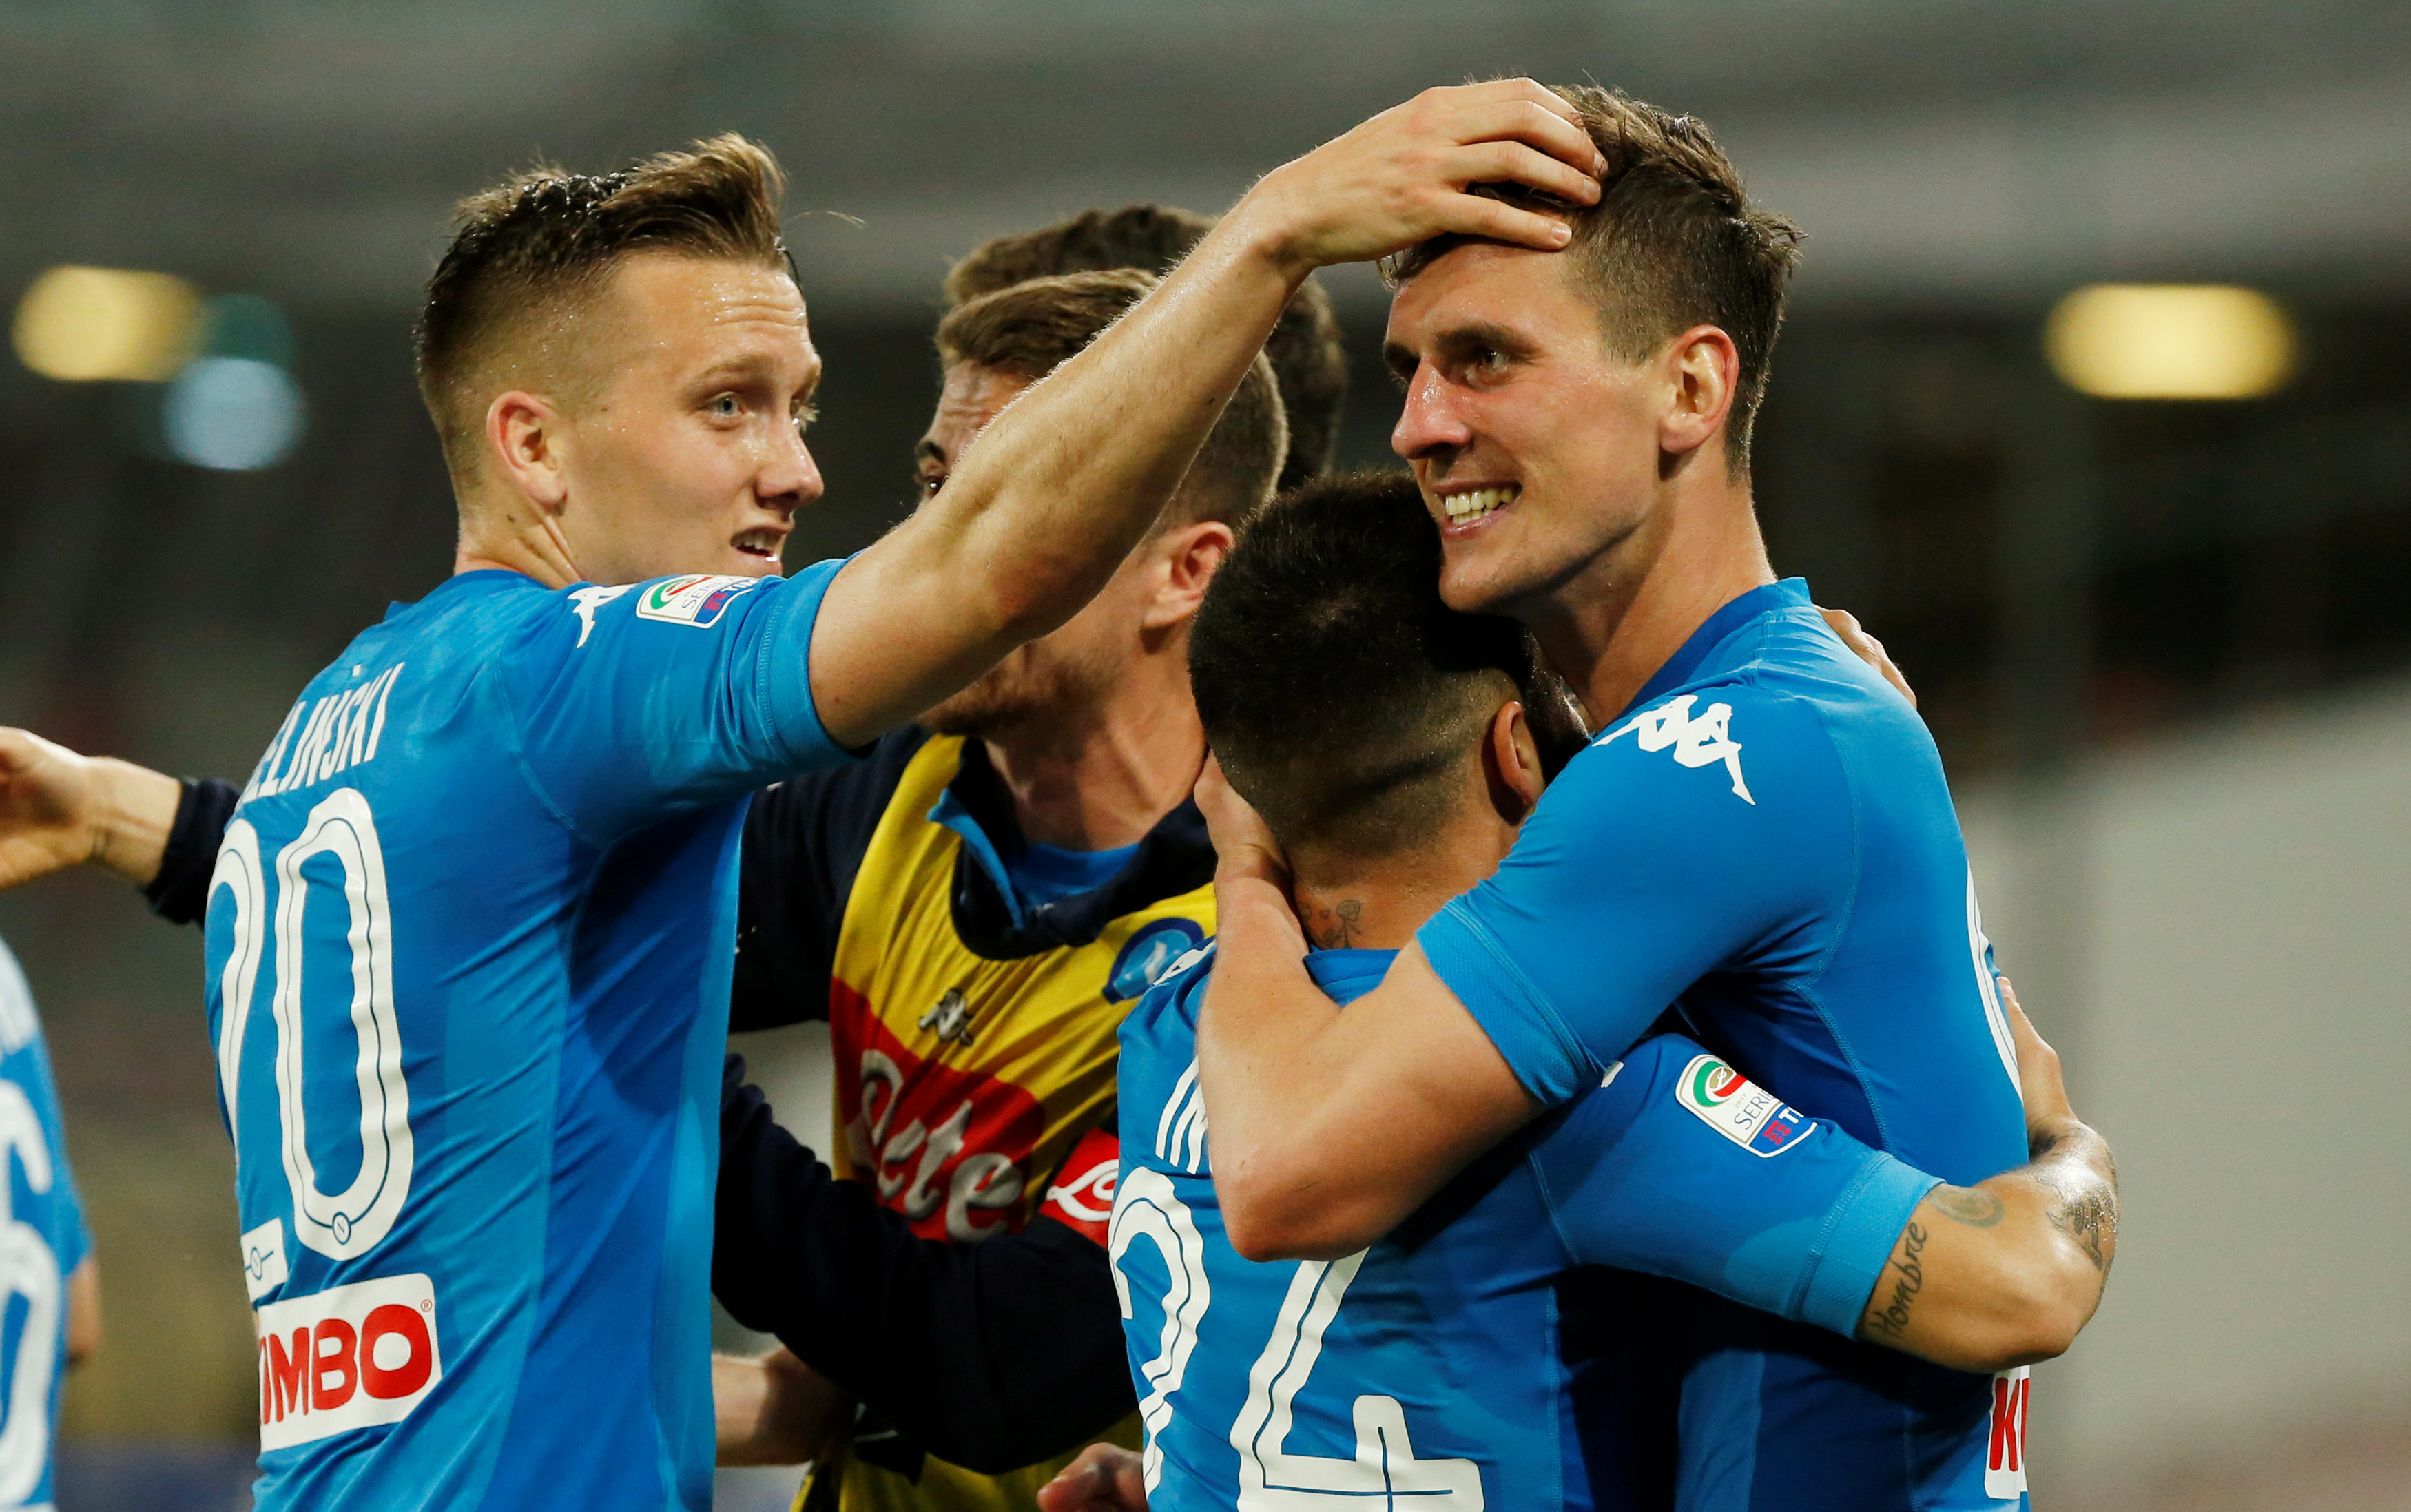 Niềm vui của các cầu thủ Napoli sau khi ghi bàn vào lưới Udinese. Ảnh: REUTERS